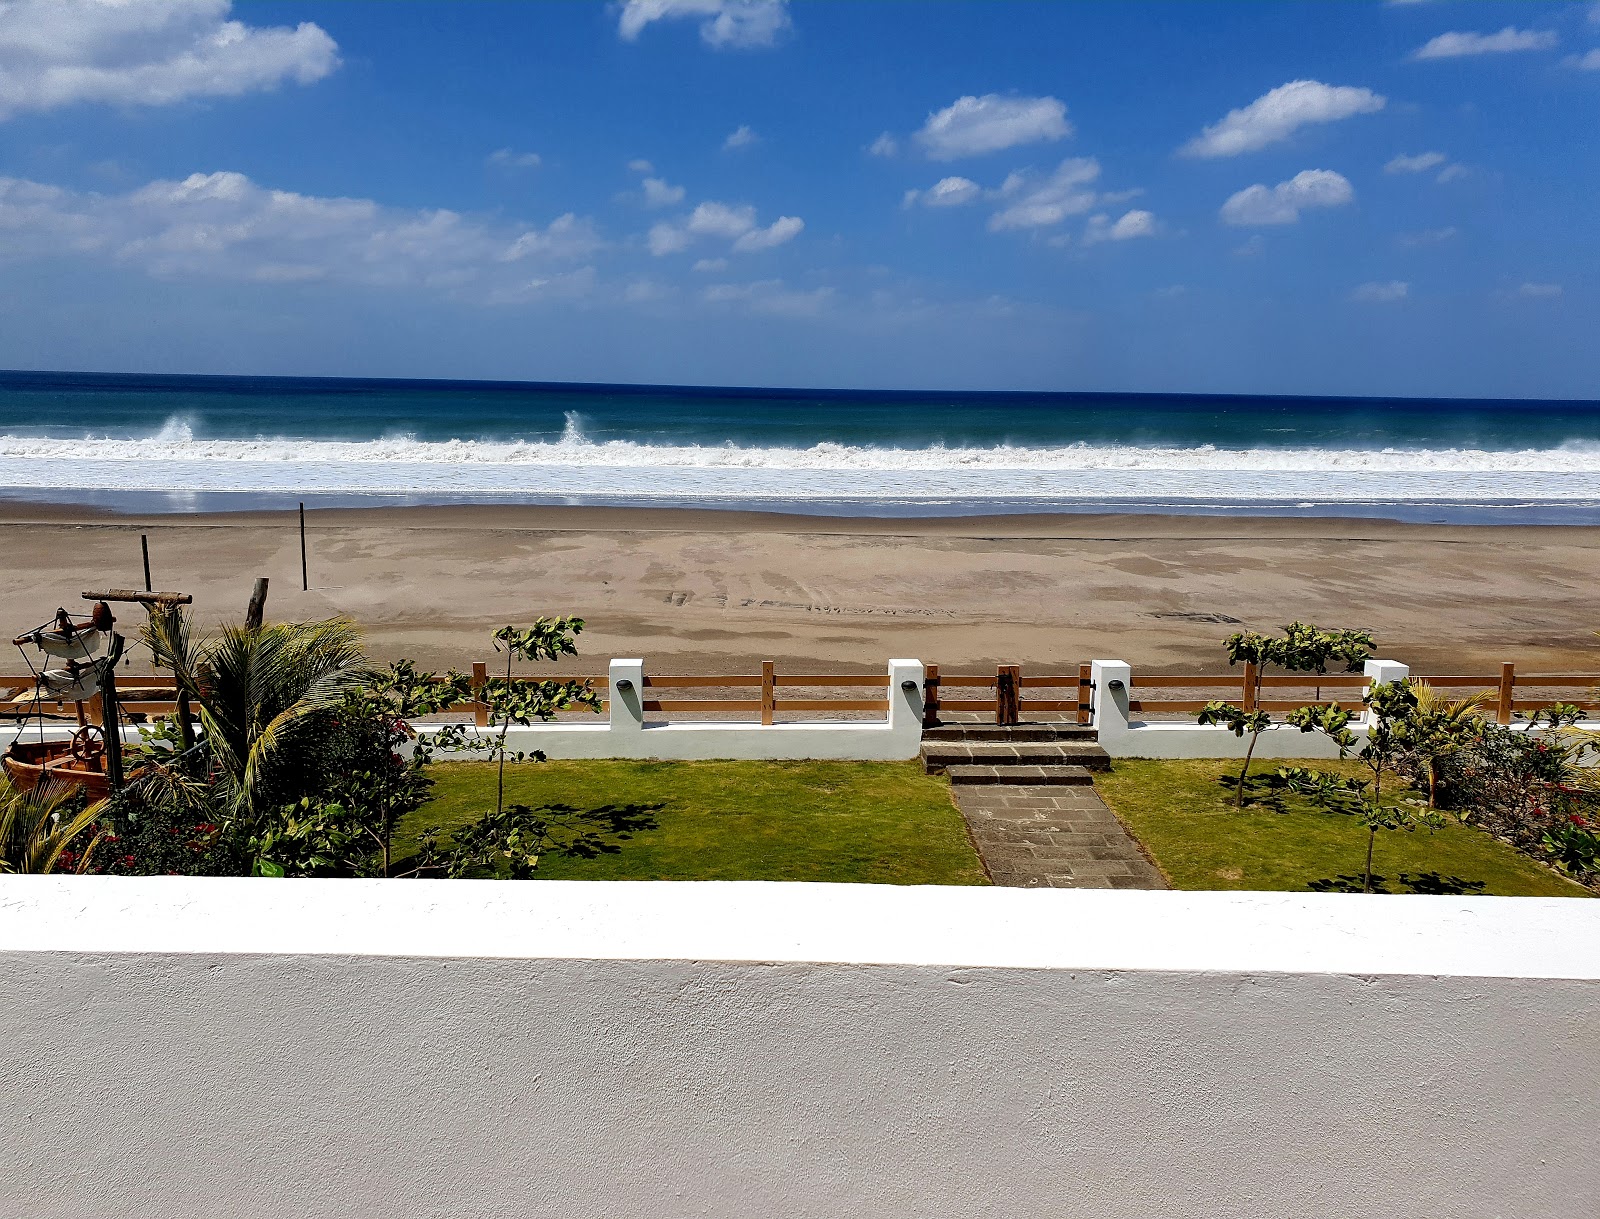 Guasacate Plajı'in fotoğrafı çok temiz temizlik seviyesi ile